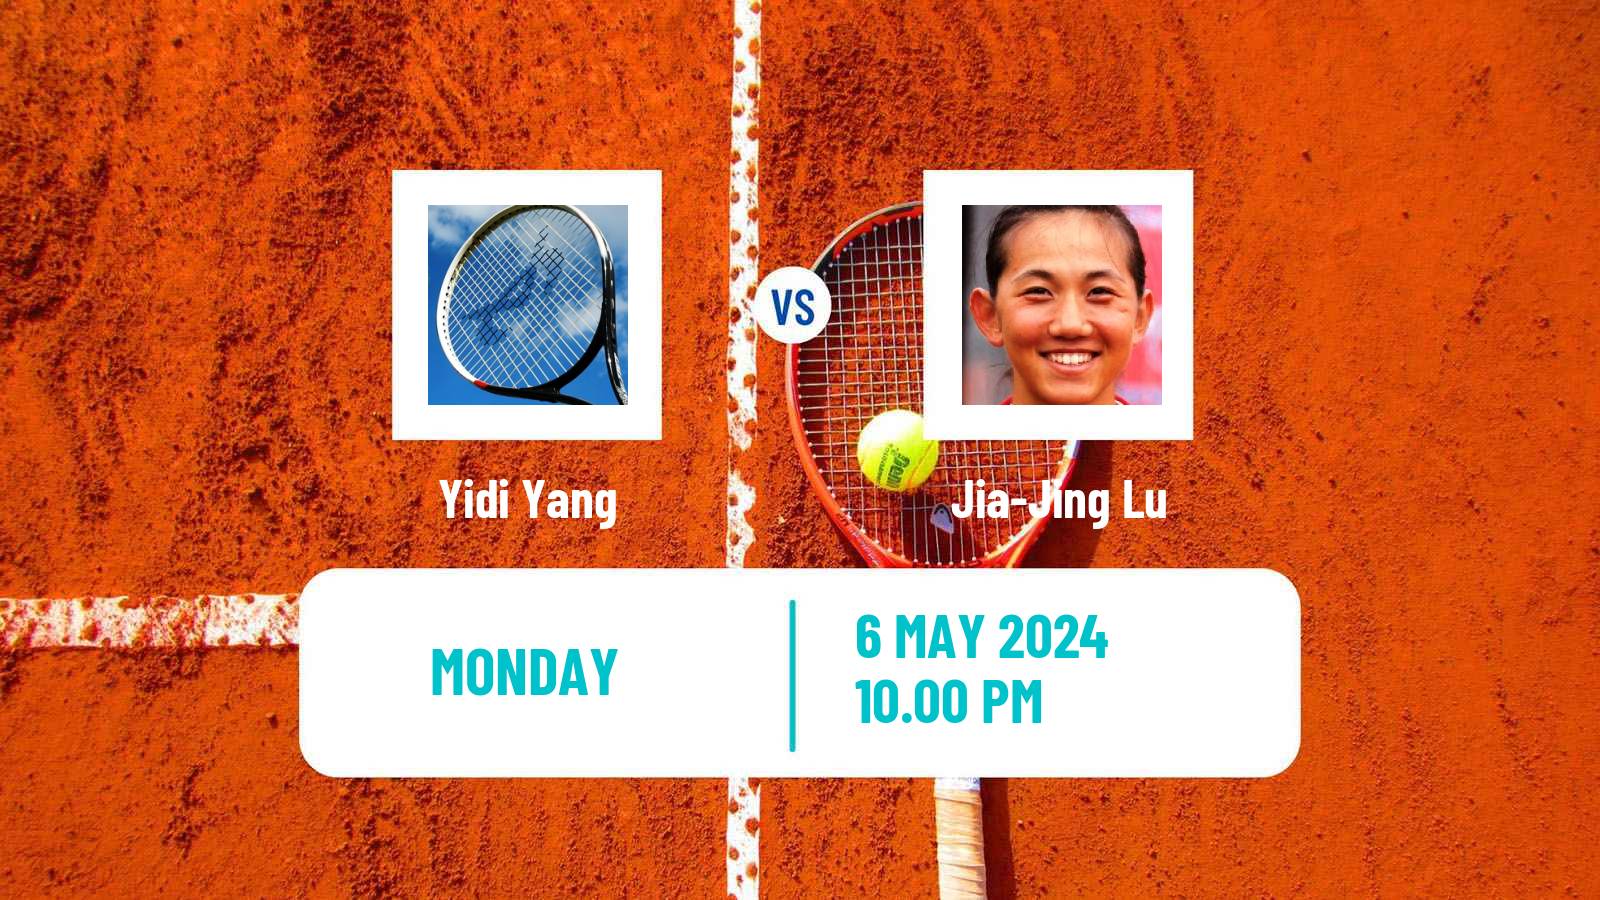 Tennis ITF W75 Luan Women Yidi Yang - Jia-Jing Lu